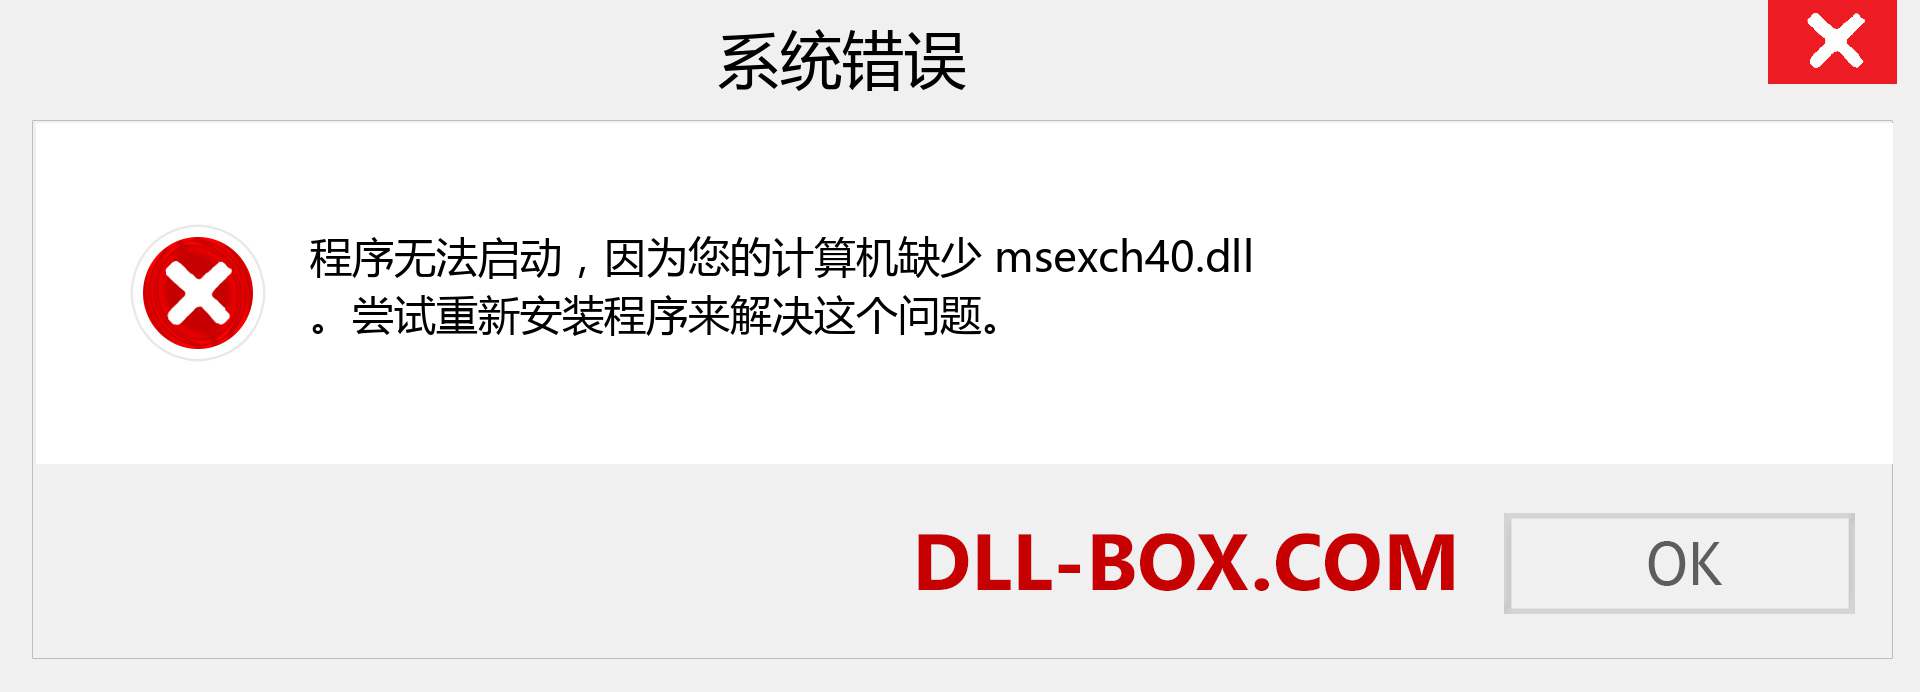 msexch40.dll 文件丢失？。 适用于 Windows 7、8、10 的下载 - 修复 Windows、照片、图像上的 msexch40 dll 丢失错误